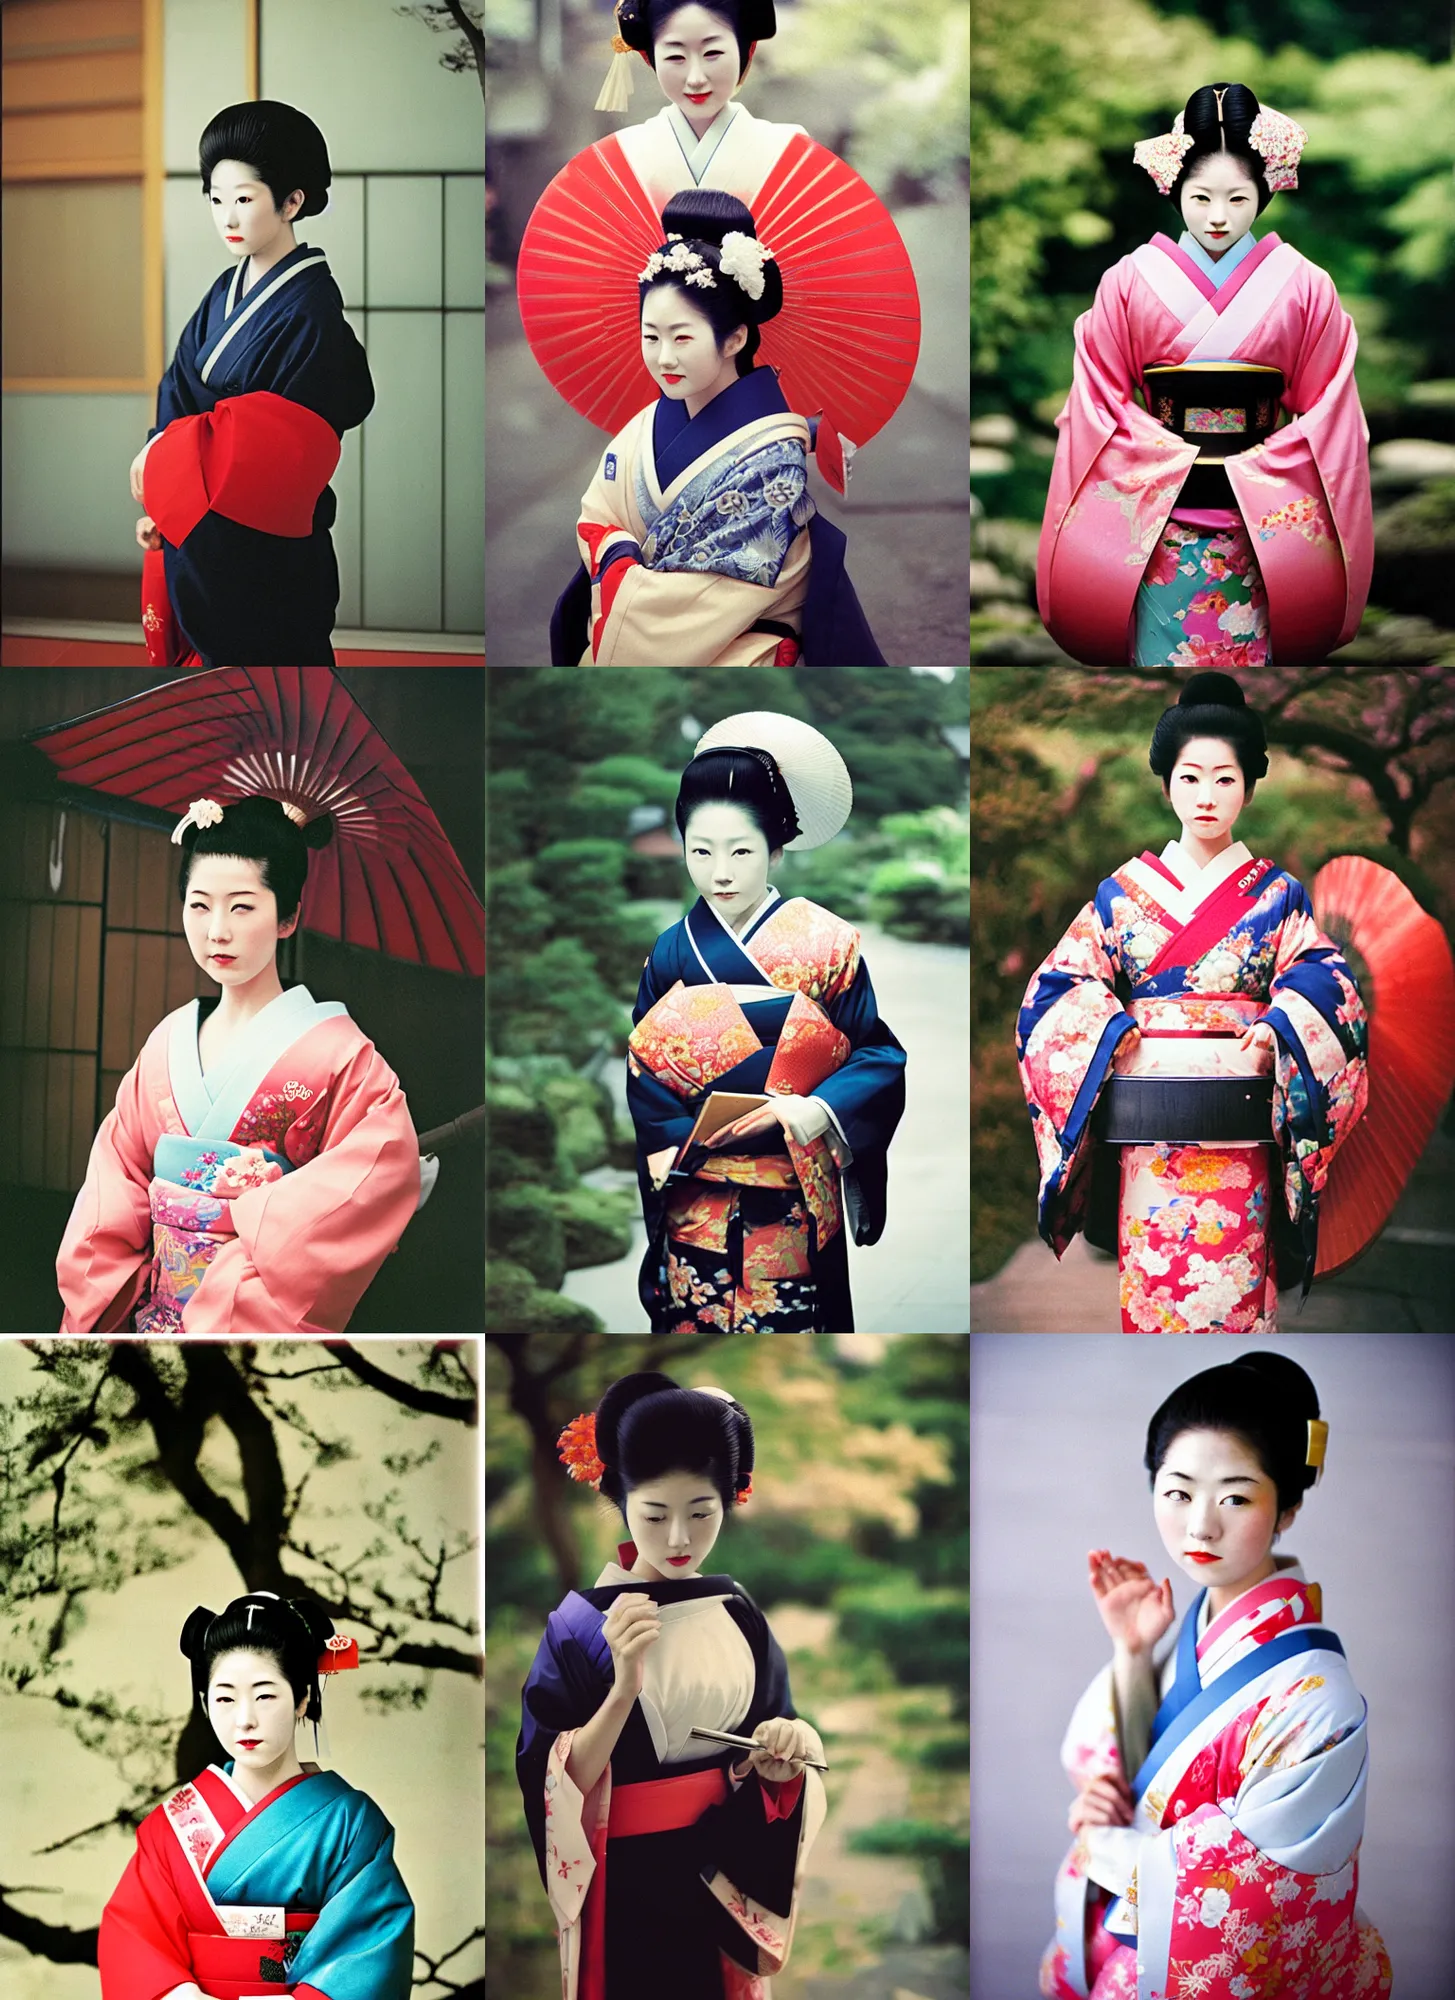 Prompt: Portrait Photograph of a Japanese Geisha Kodak Pro Image 100 Color